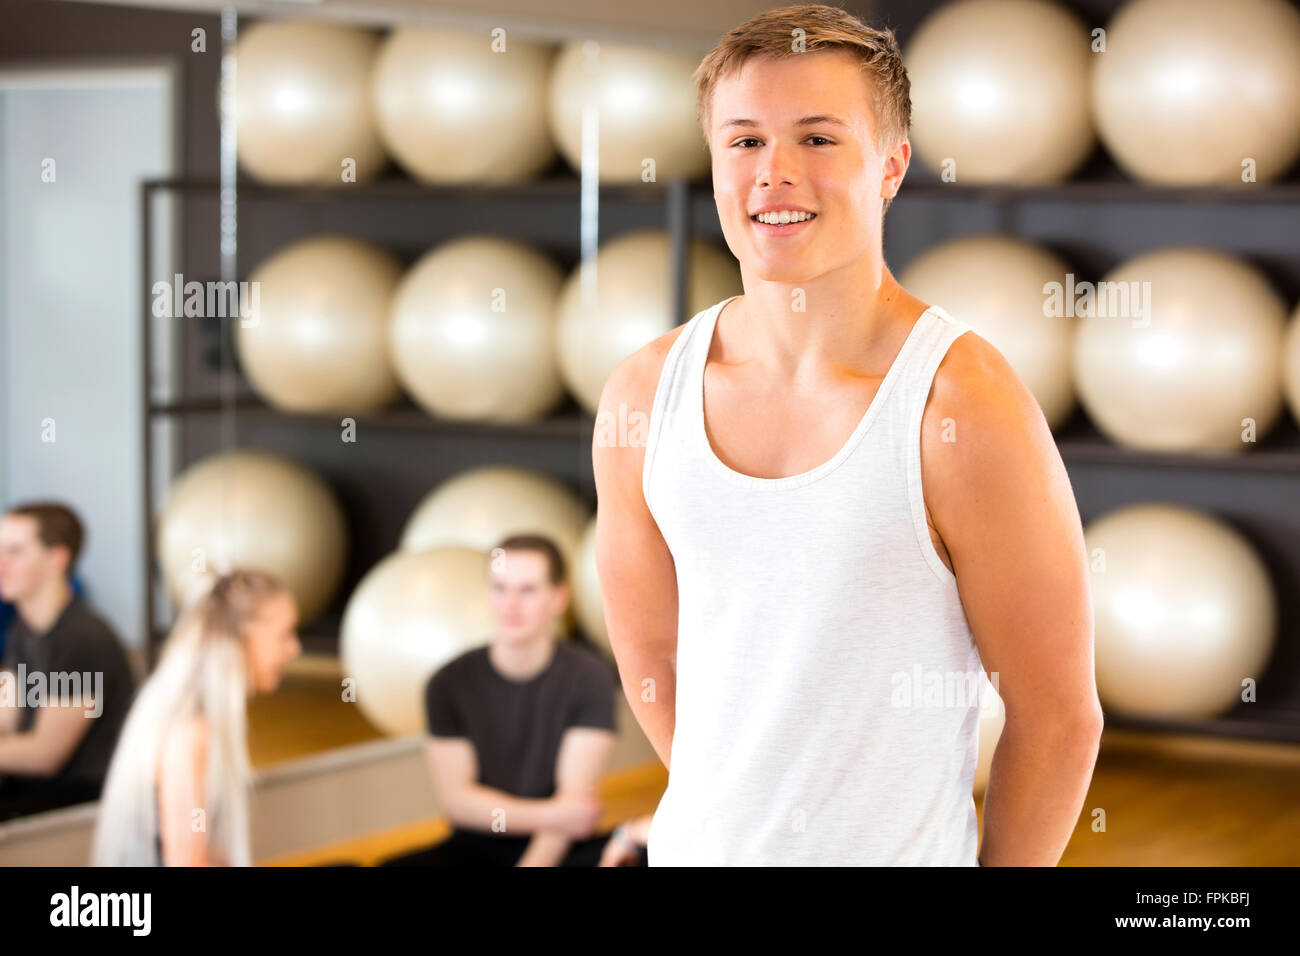 Smiling young man portrait à fitness gym Banque D'Images